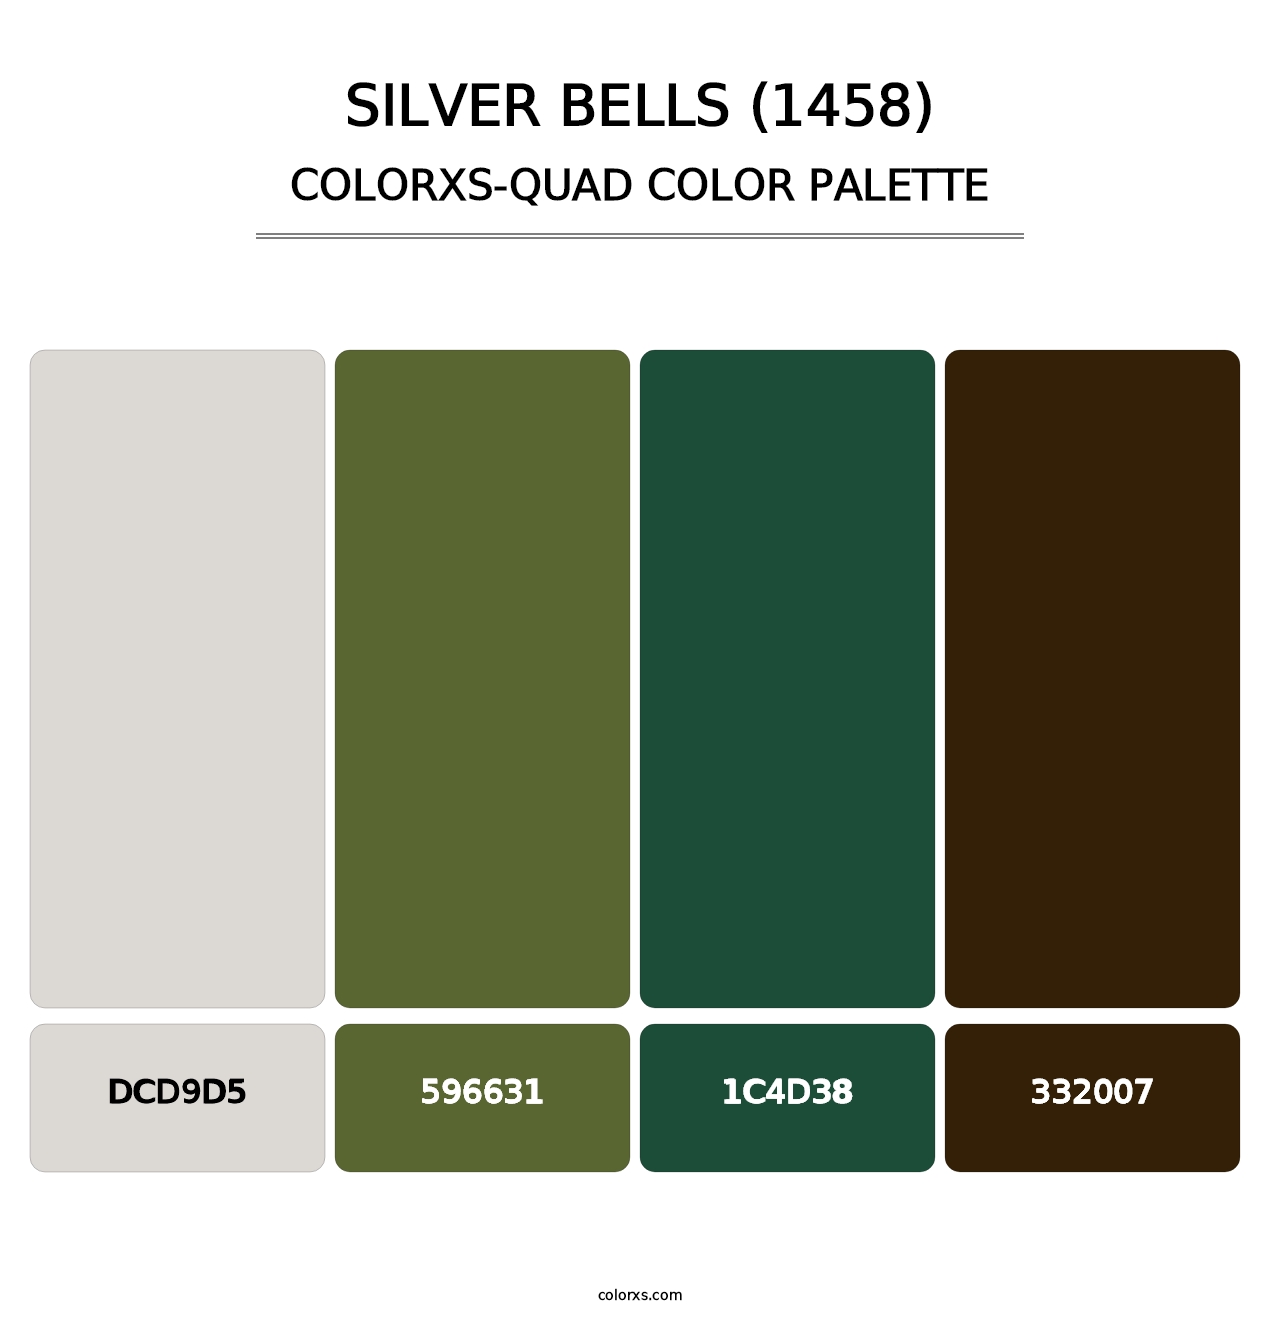 Silver Bells (1458) - Colorxs Quad Palette